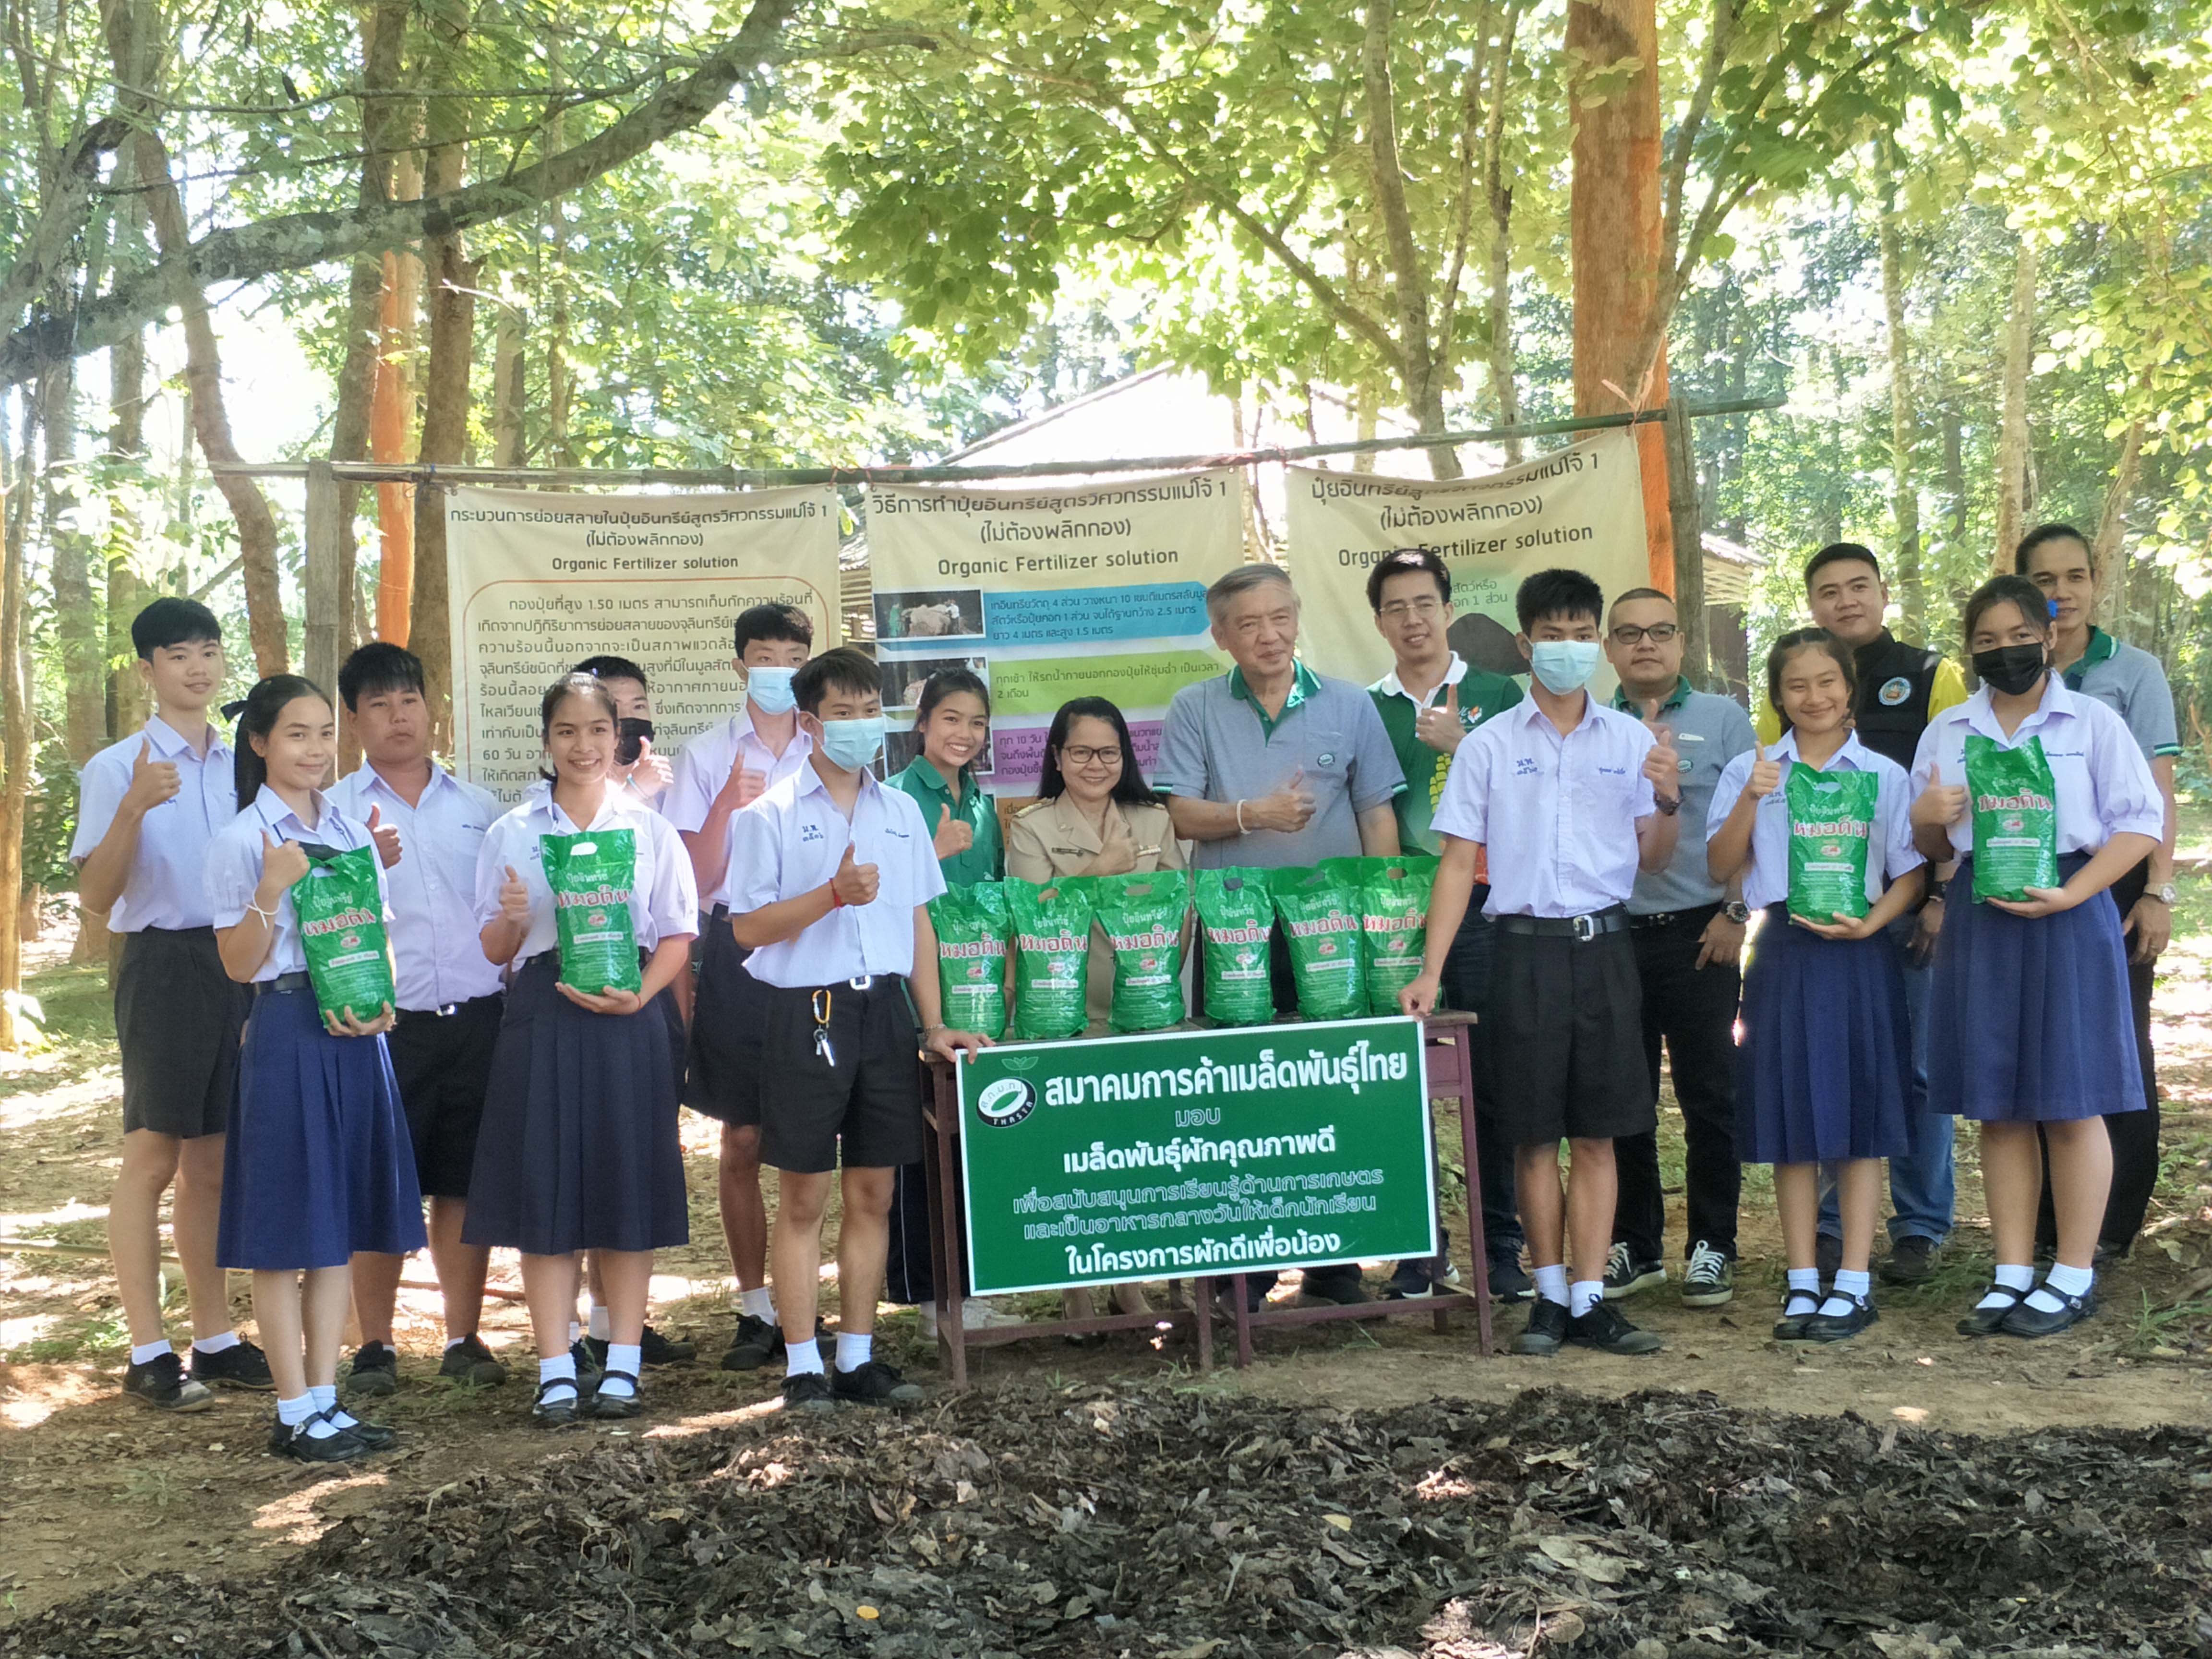 สมาคมการค้าเมล็ดพันธุ์ไทย ร่วมกับโครงการธรรมชาติปลอดภัยฯ และอุทยานแห่งชาติศรีลานนา มอบเมล็ดพันธุ์และปุ๋ยอินทรีย์คุณภาพในโครงการ “ผักดีเพื่อน้อง” ให้กับ 4 โรงเรียนในพื้นที่อุทยานฯ